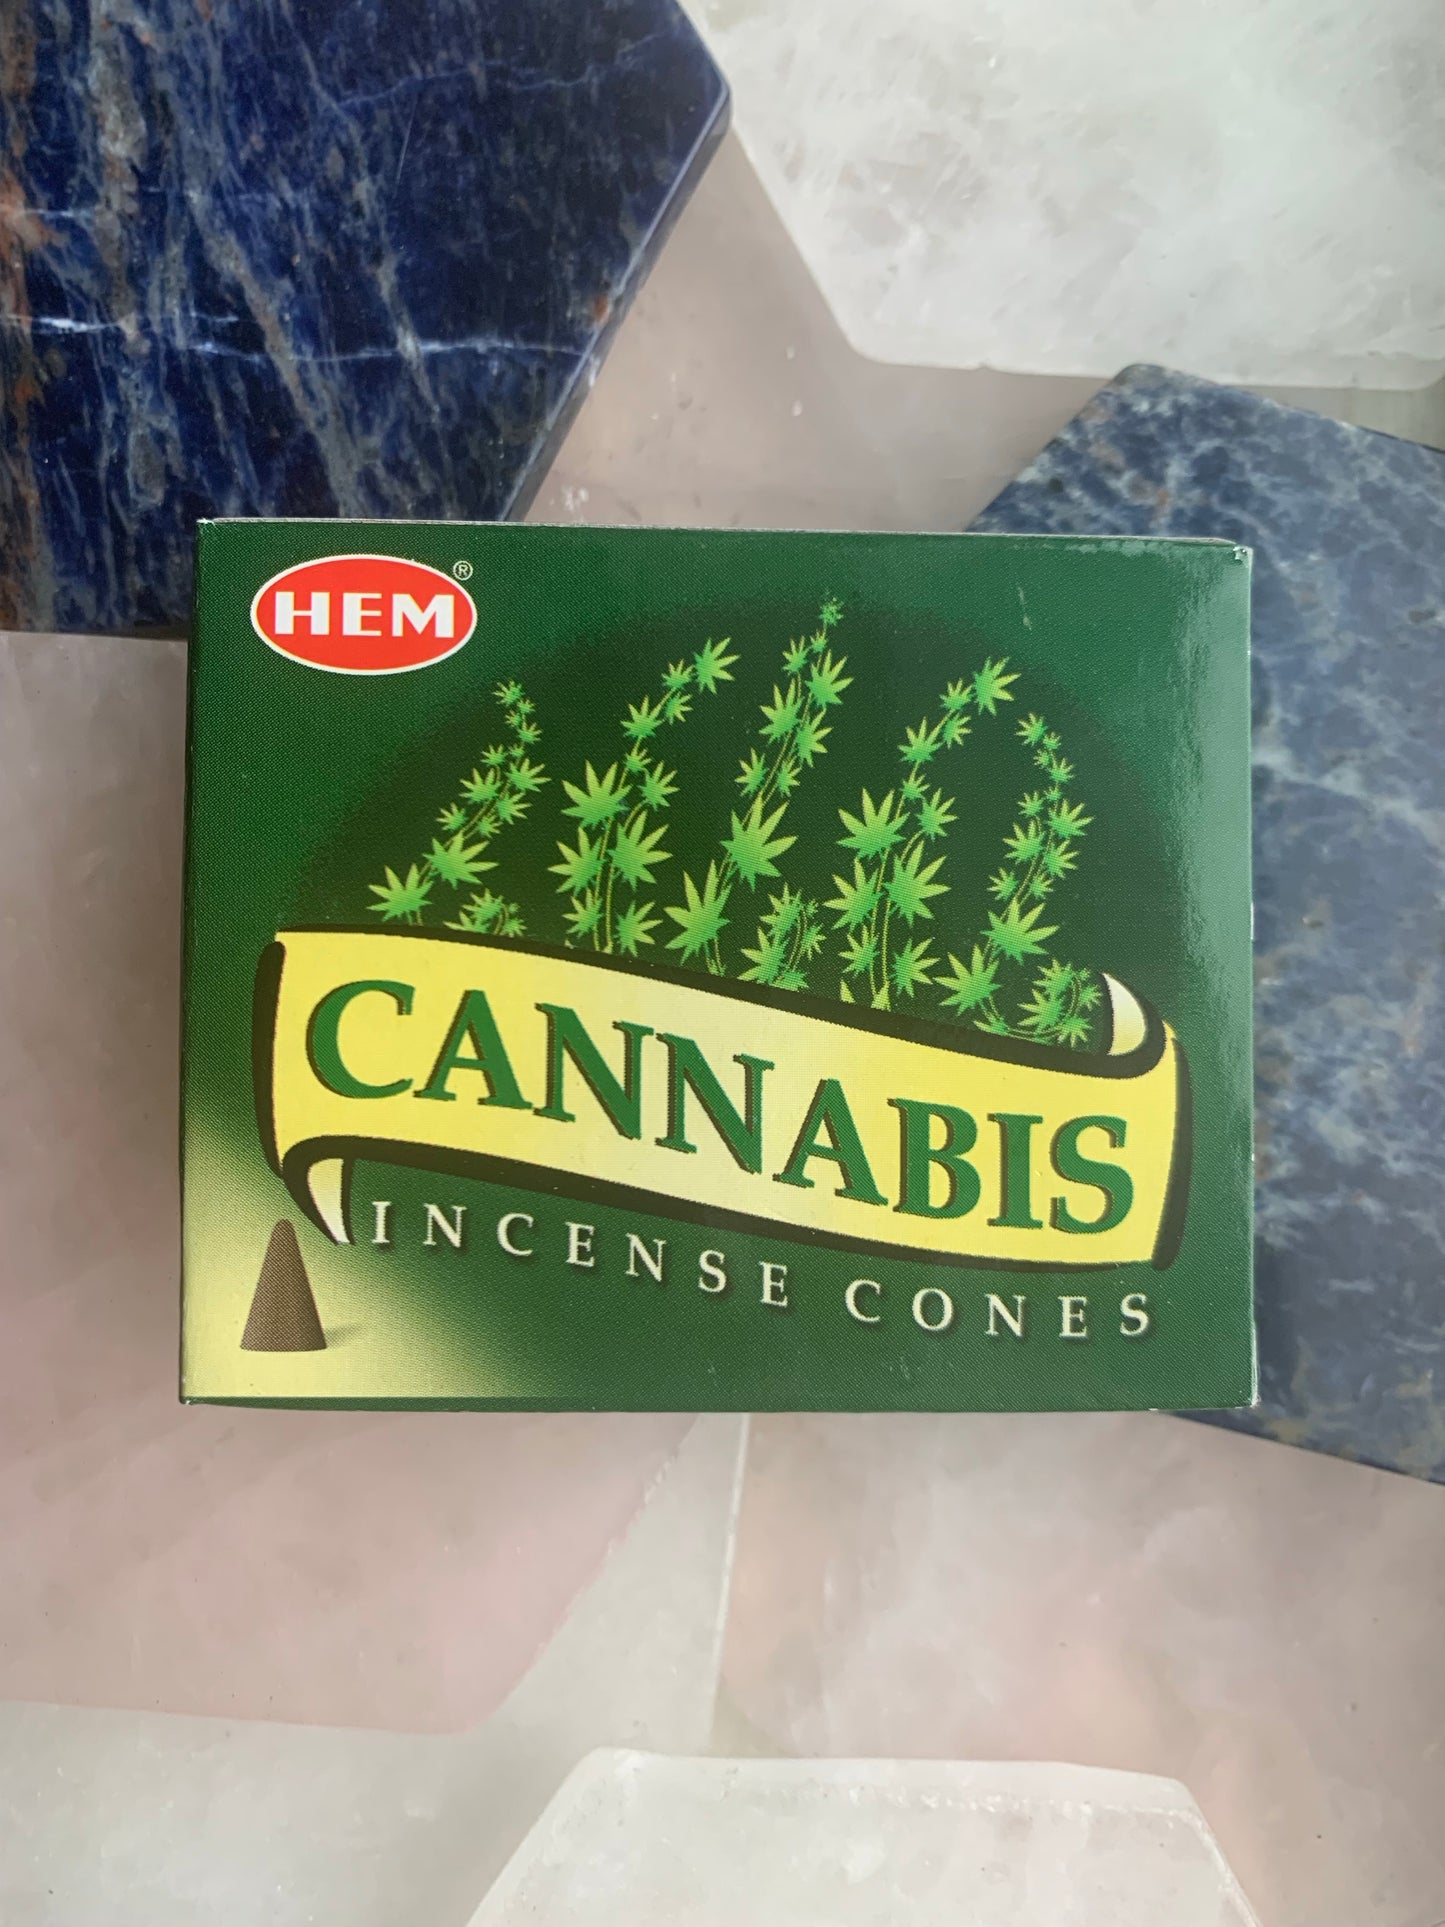 HEM Incense Cones